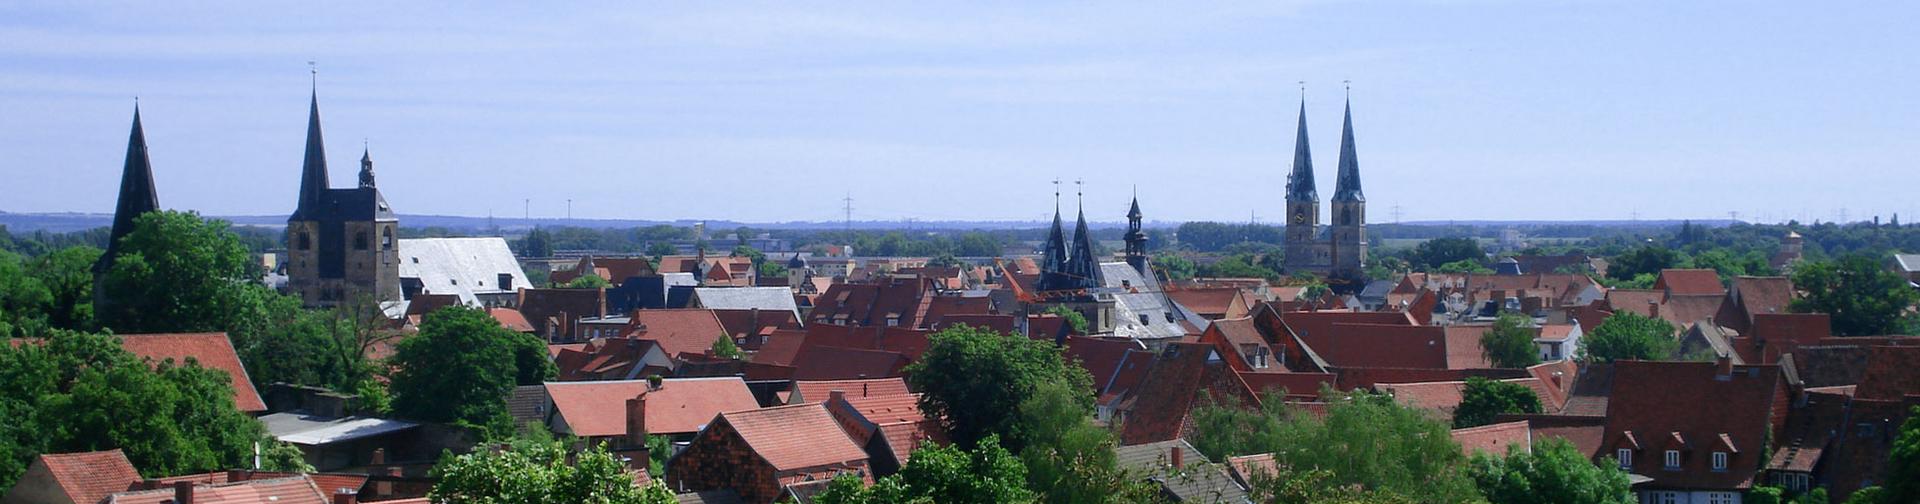 Quedlinburg. Panorama